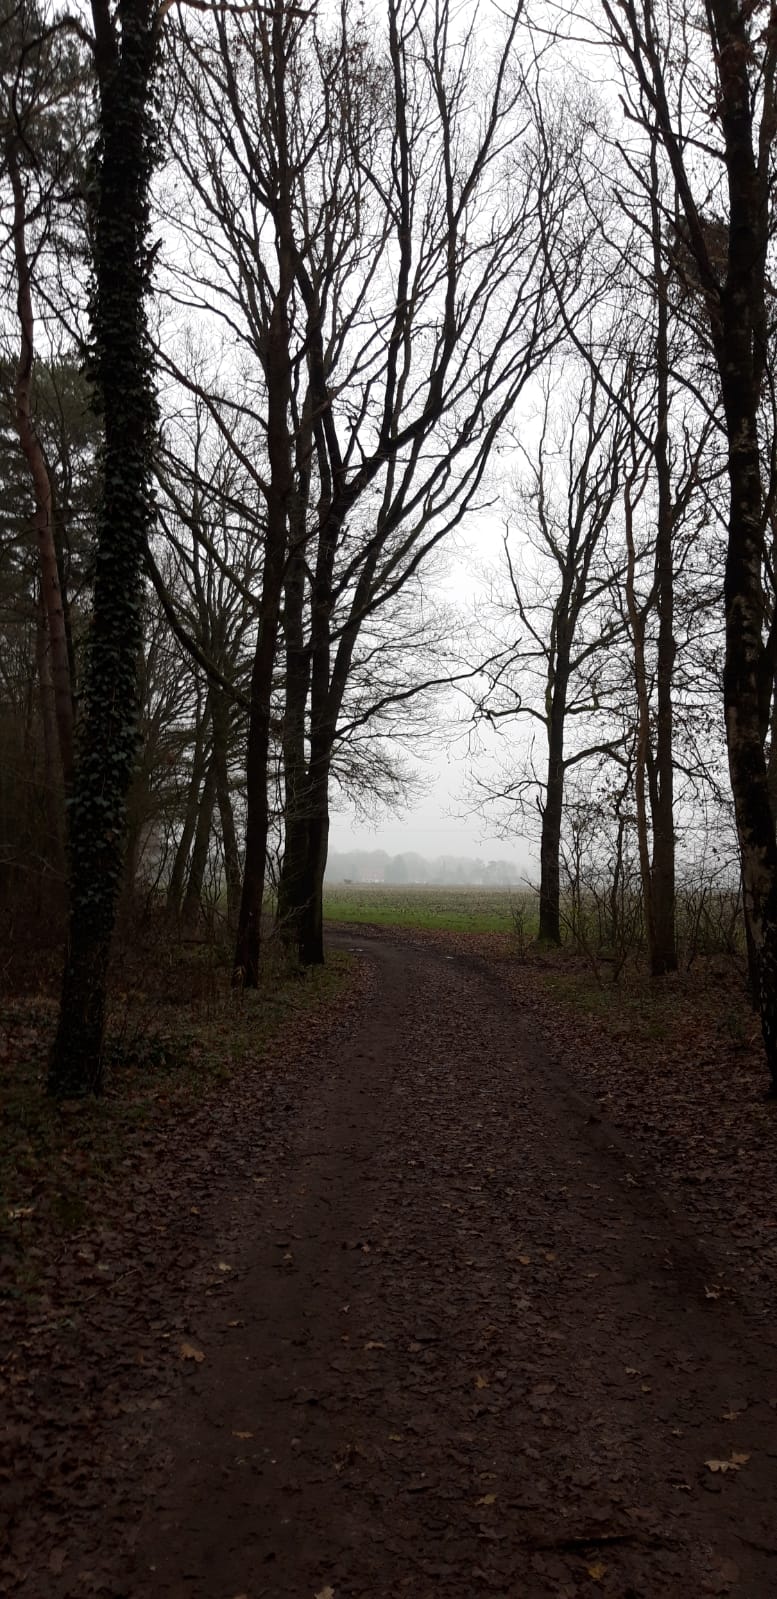 Donker in het bos, grijs voorbij de bomen (Foto: Partner van _UserName_)